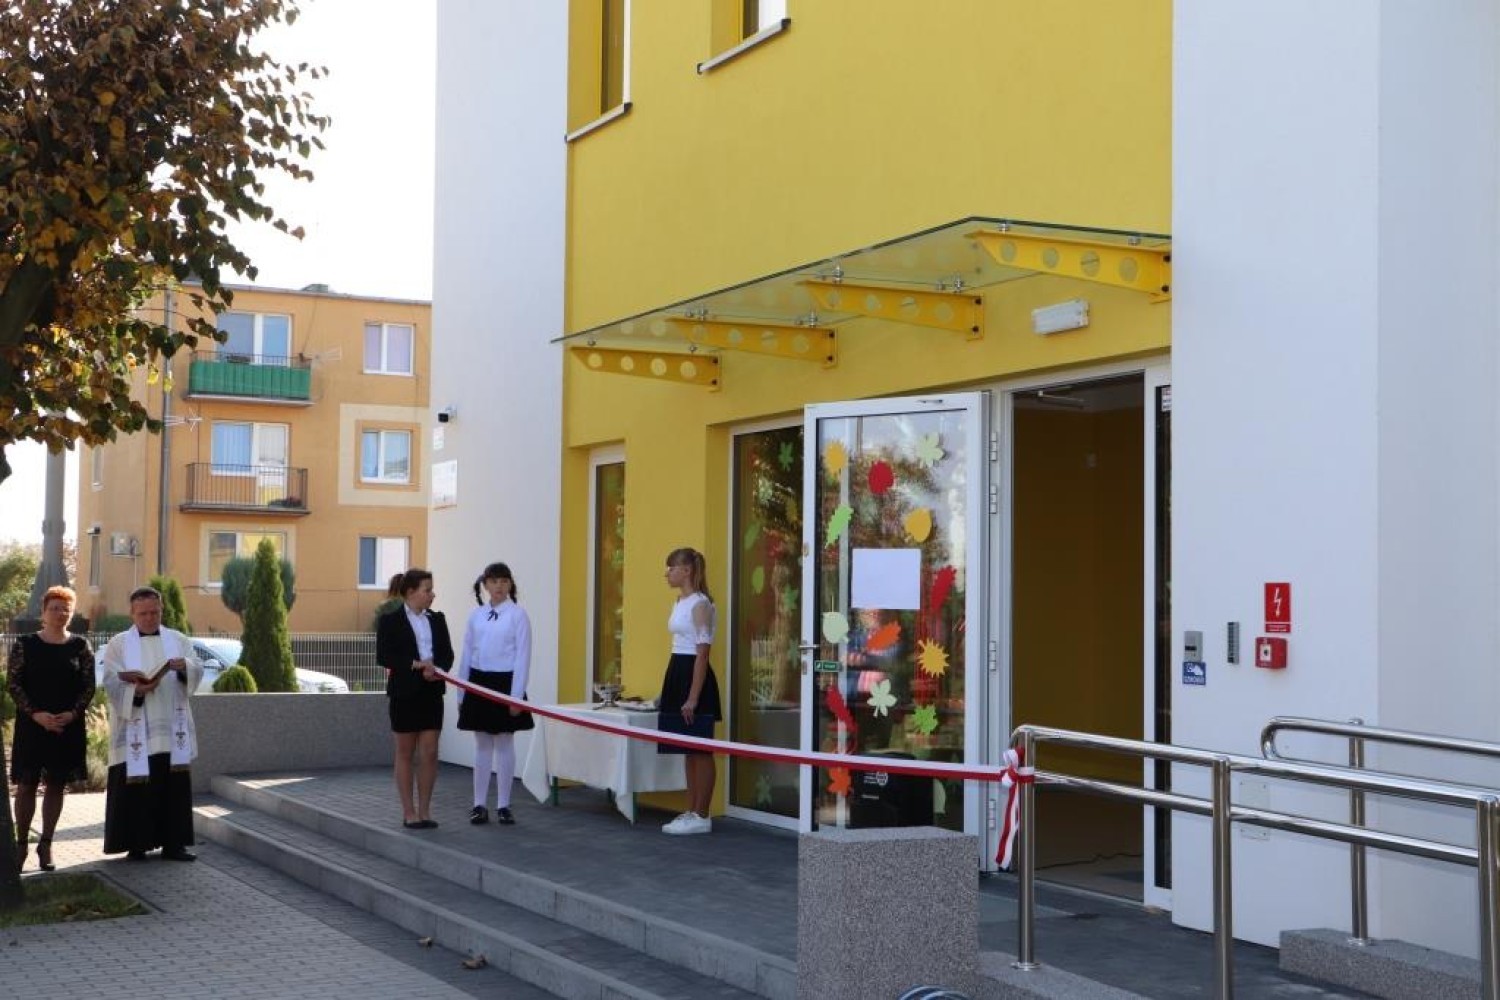 Uroczyste otwarcie Publicznego Przedszkola Samorządowego w Blizanowie Drugim